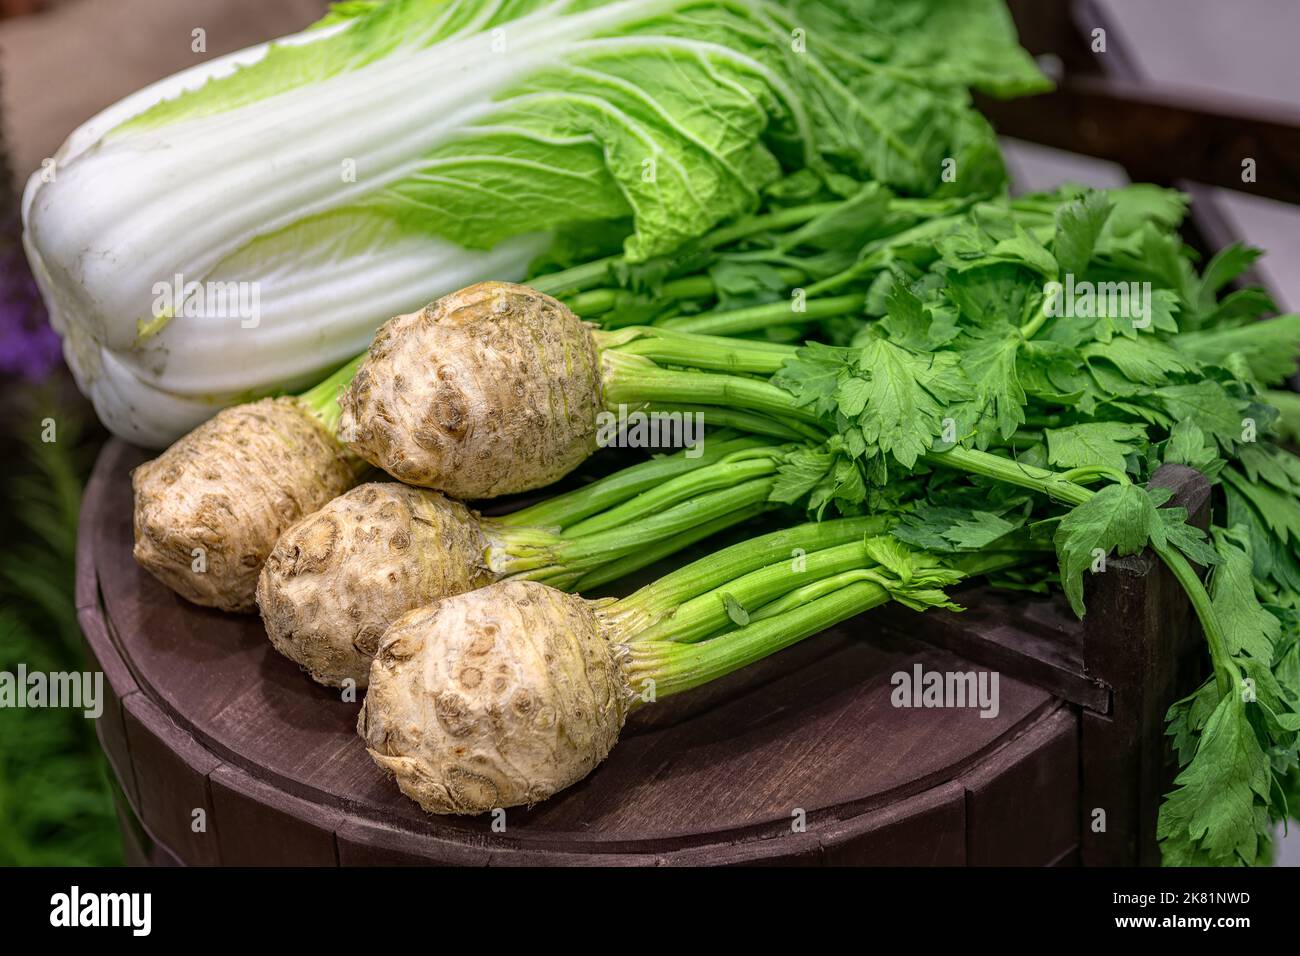 Radice di sedano fresco con gambo con foglie verdi e cavolo cinese. Ingredienti salutari per insalate. Cibo vegetariano. Foto Stock